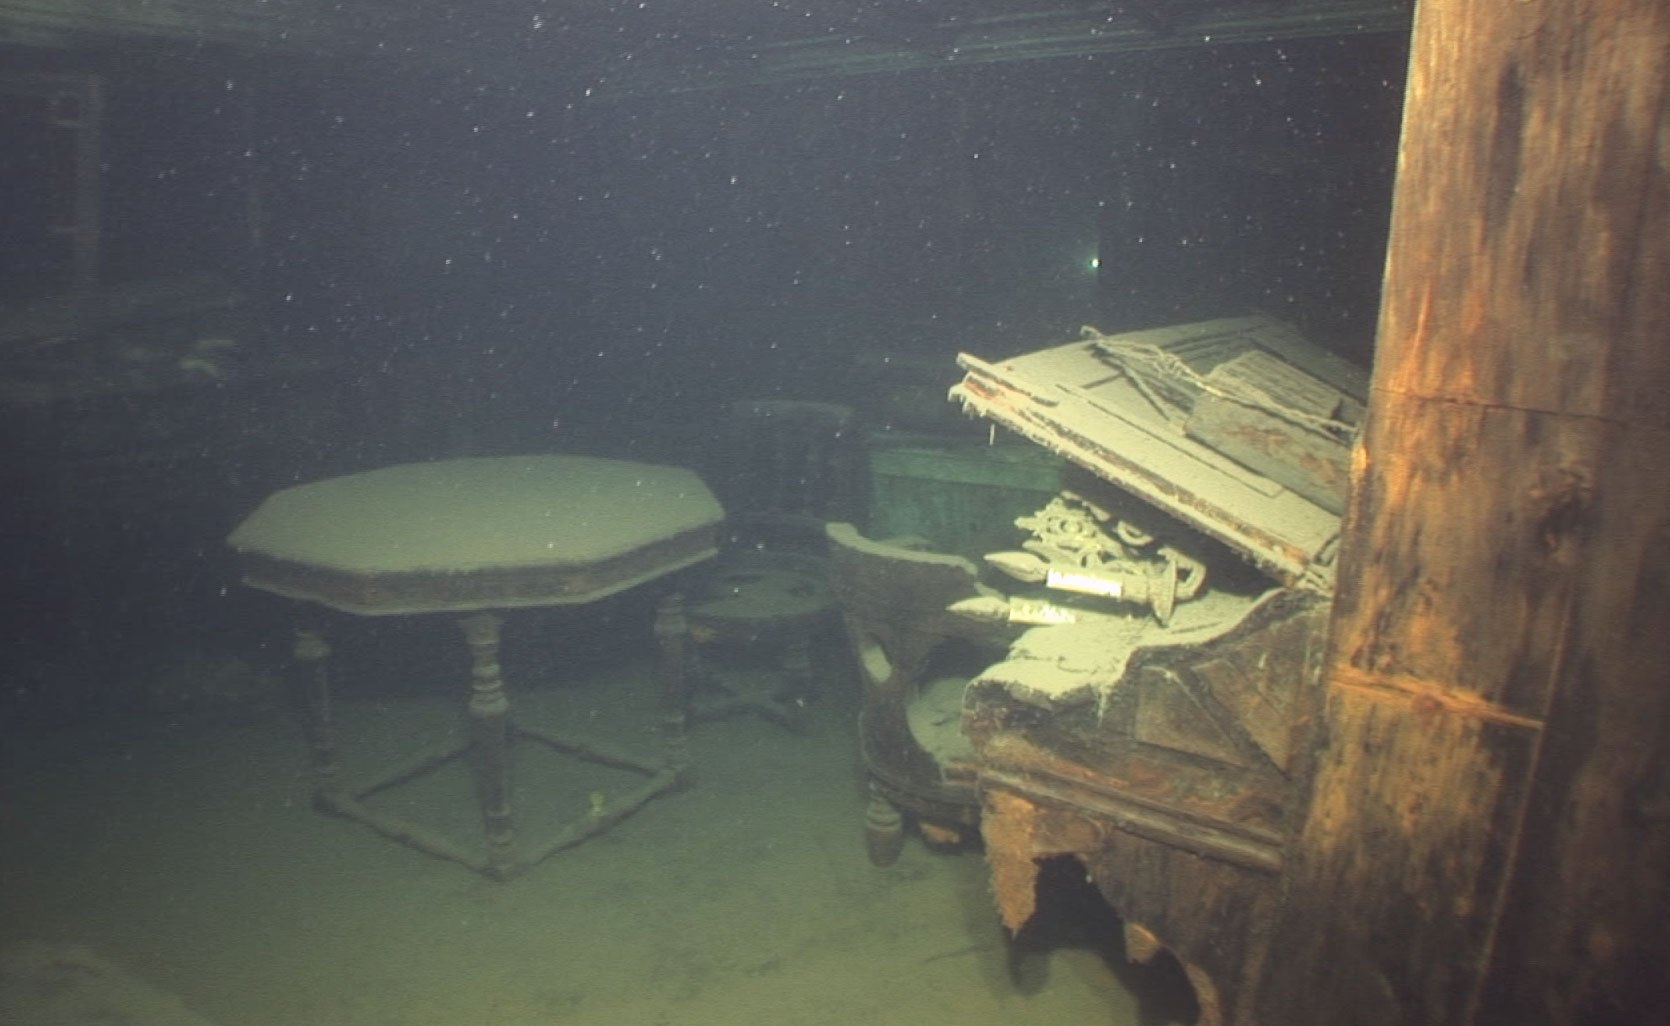 Титаник последние фото со дна